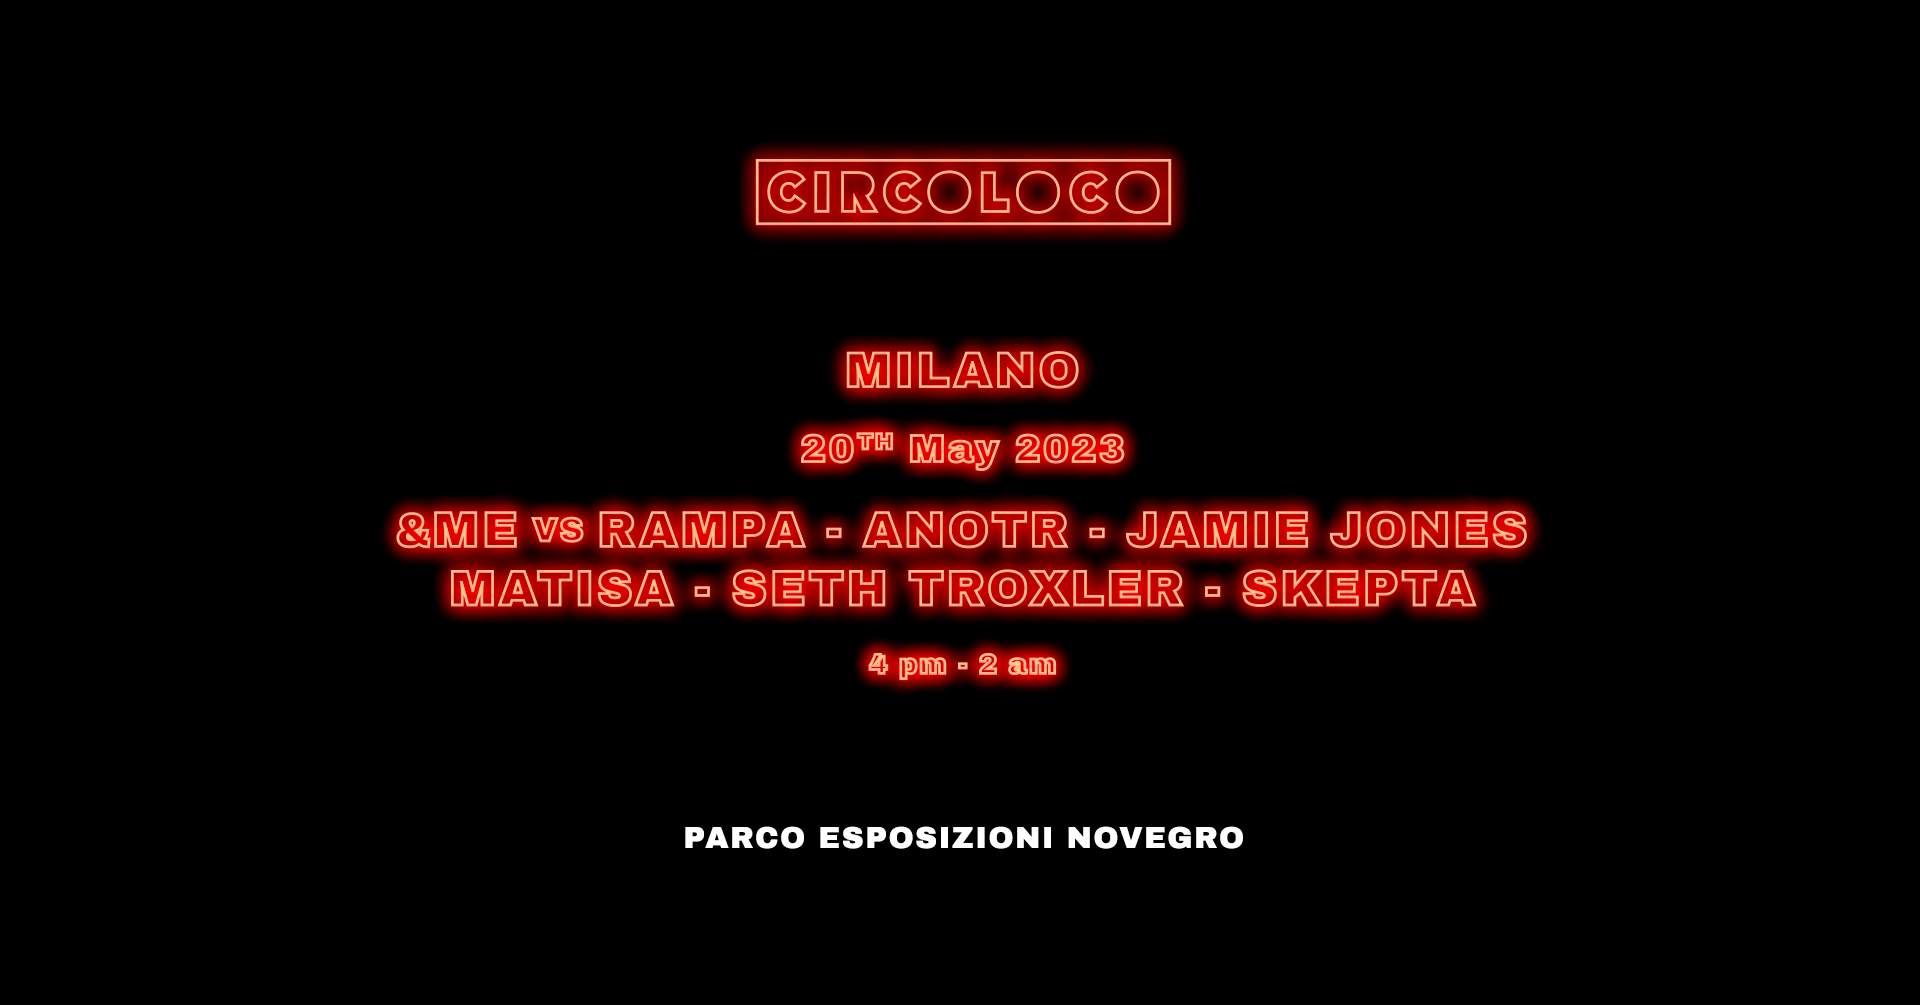 CircoLoco Milano - Página frontal